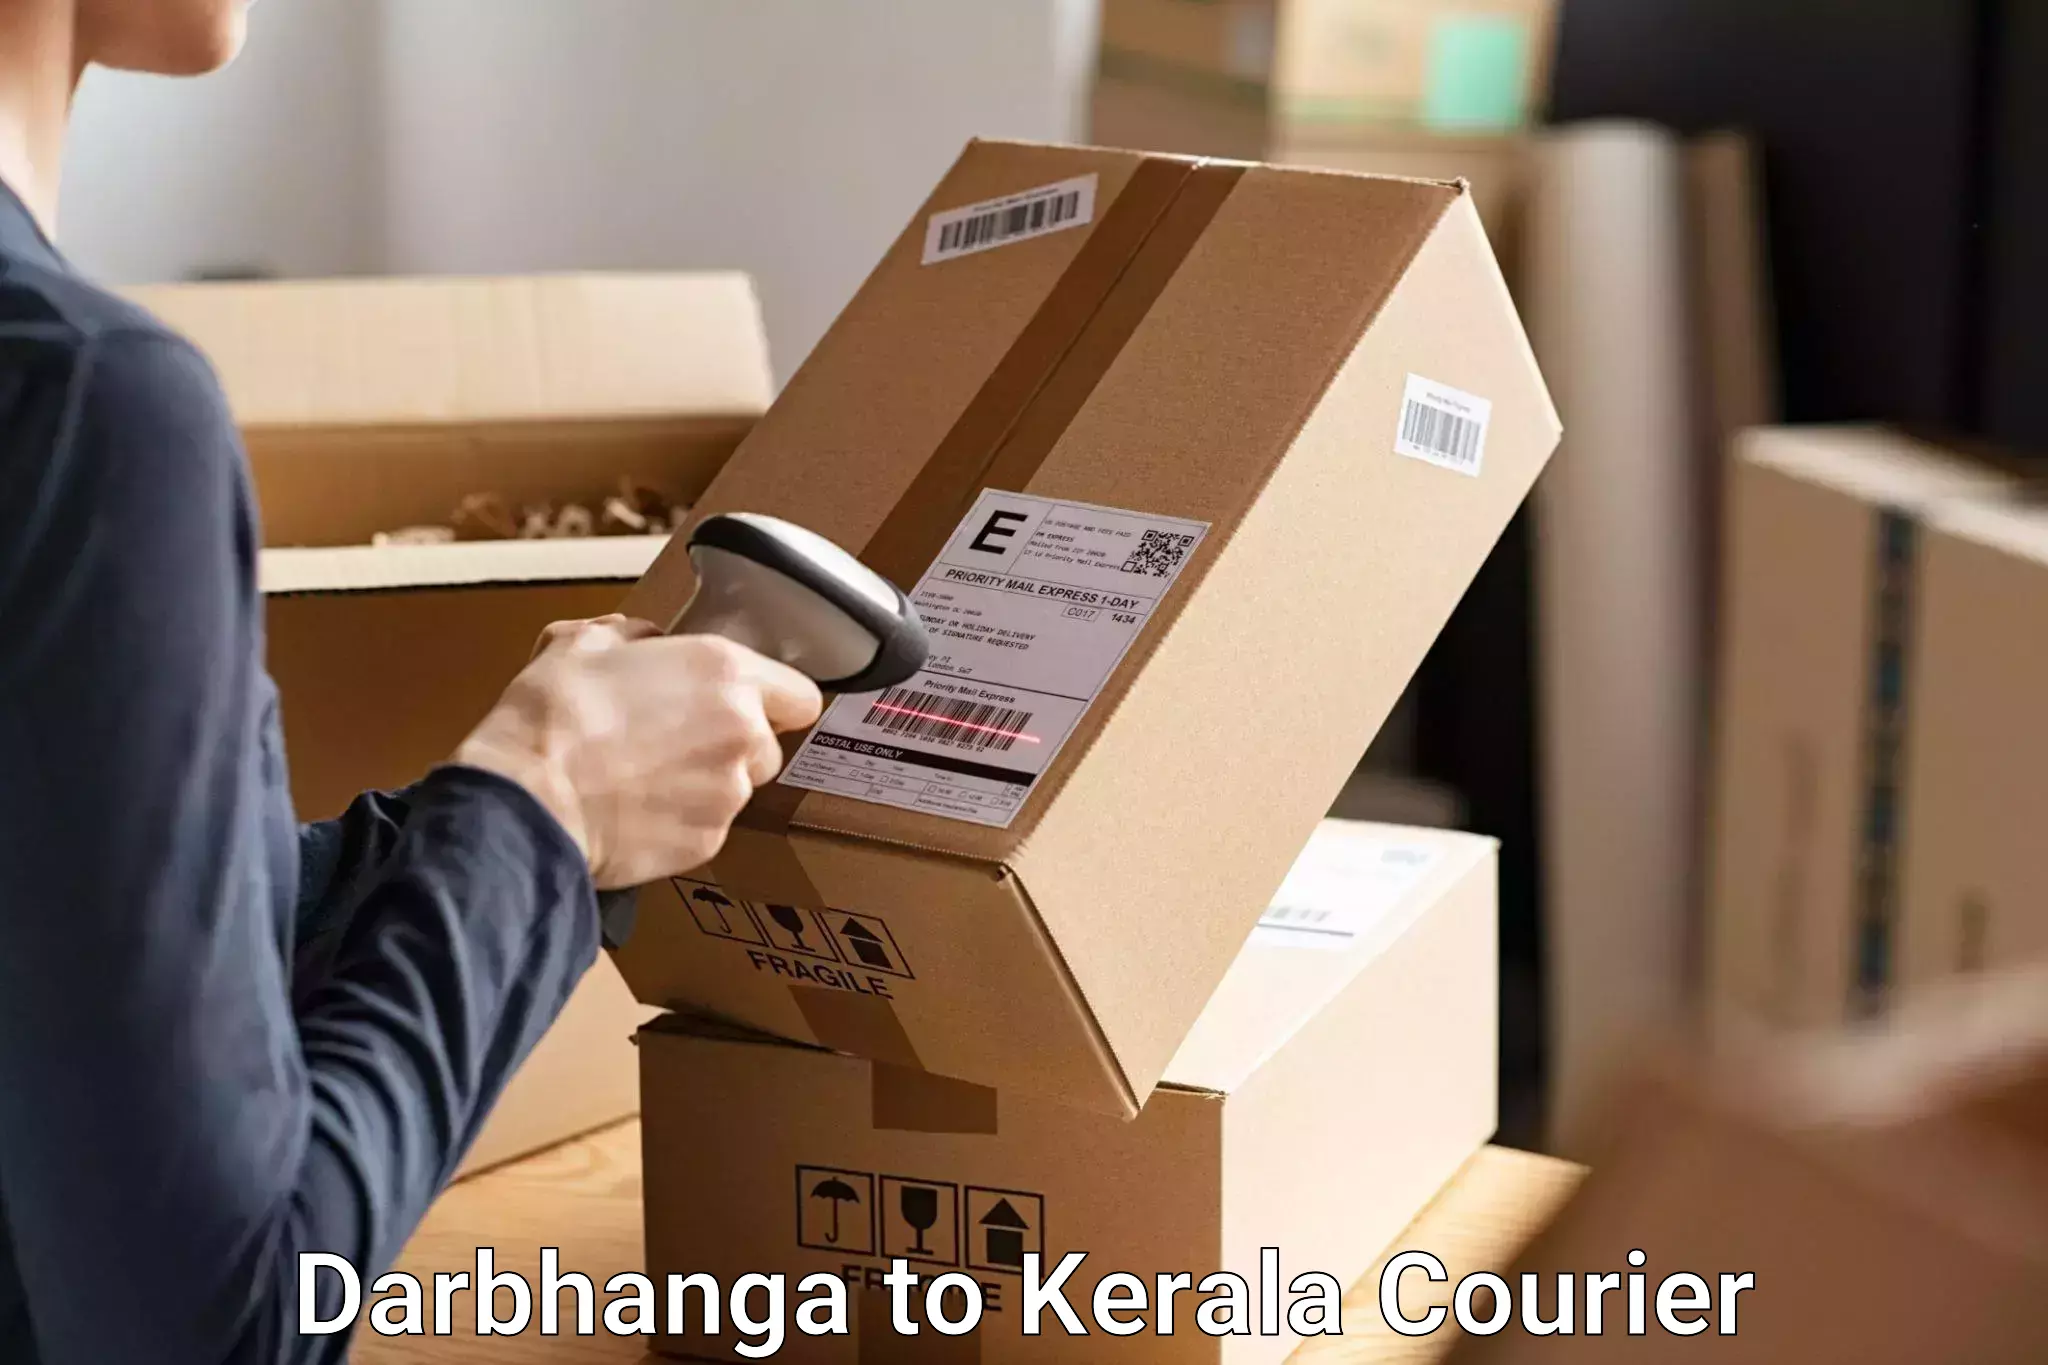 Personal effects shipping Darbhanga to Cochin Port Kochi